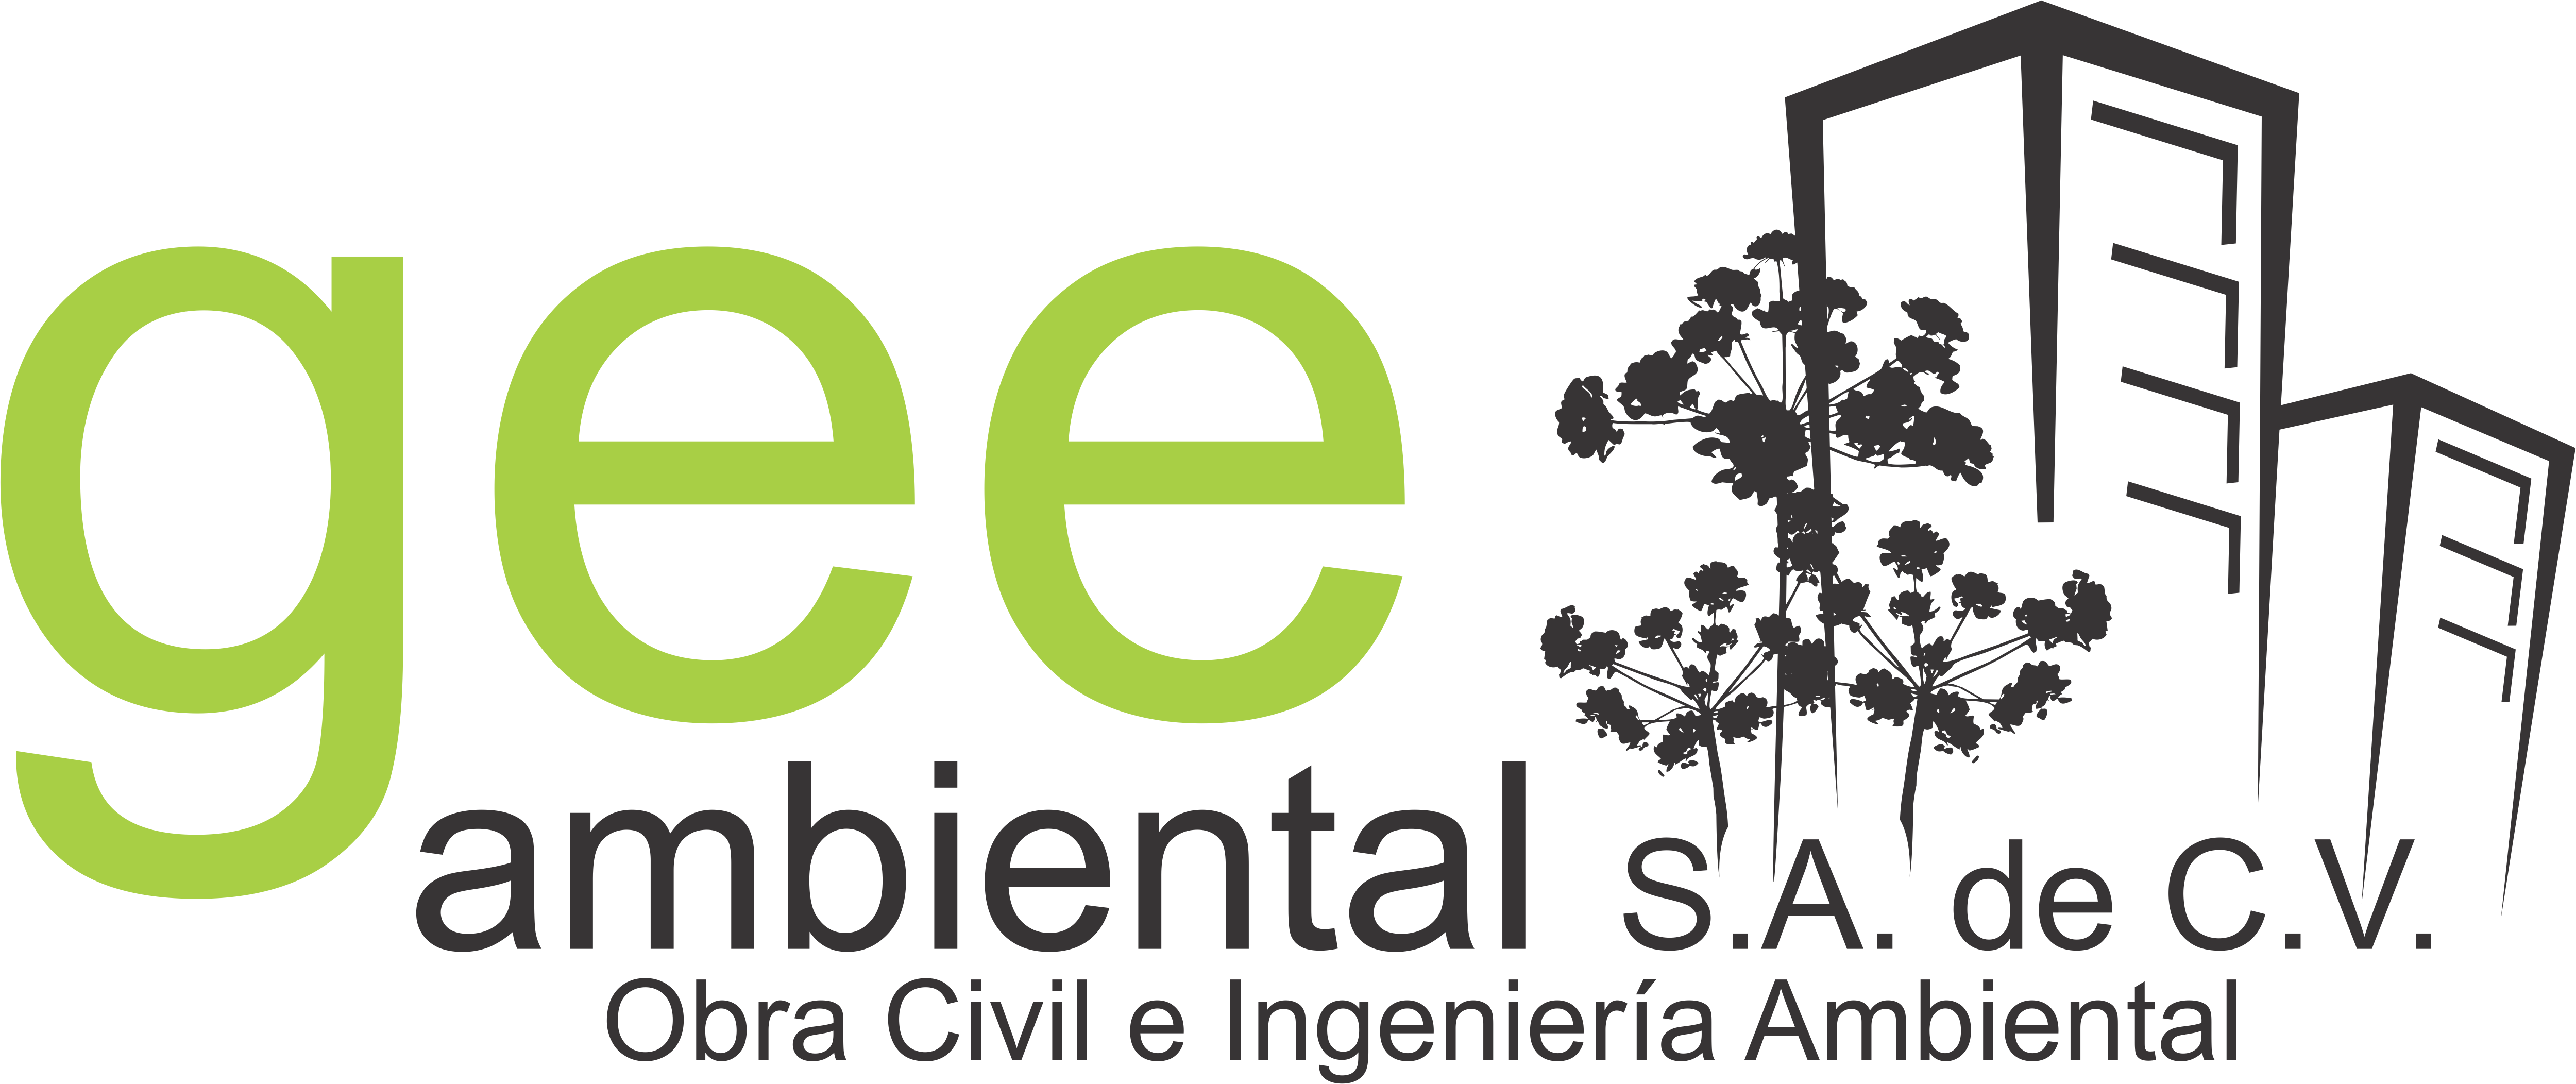 gee ambiental logo